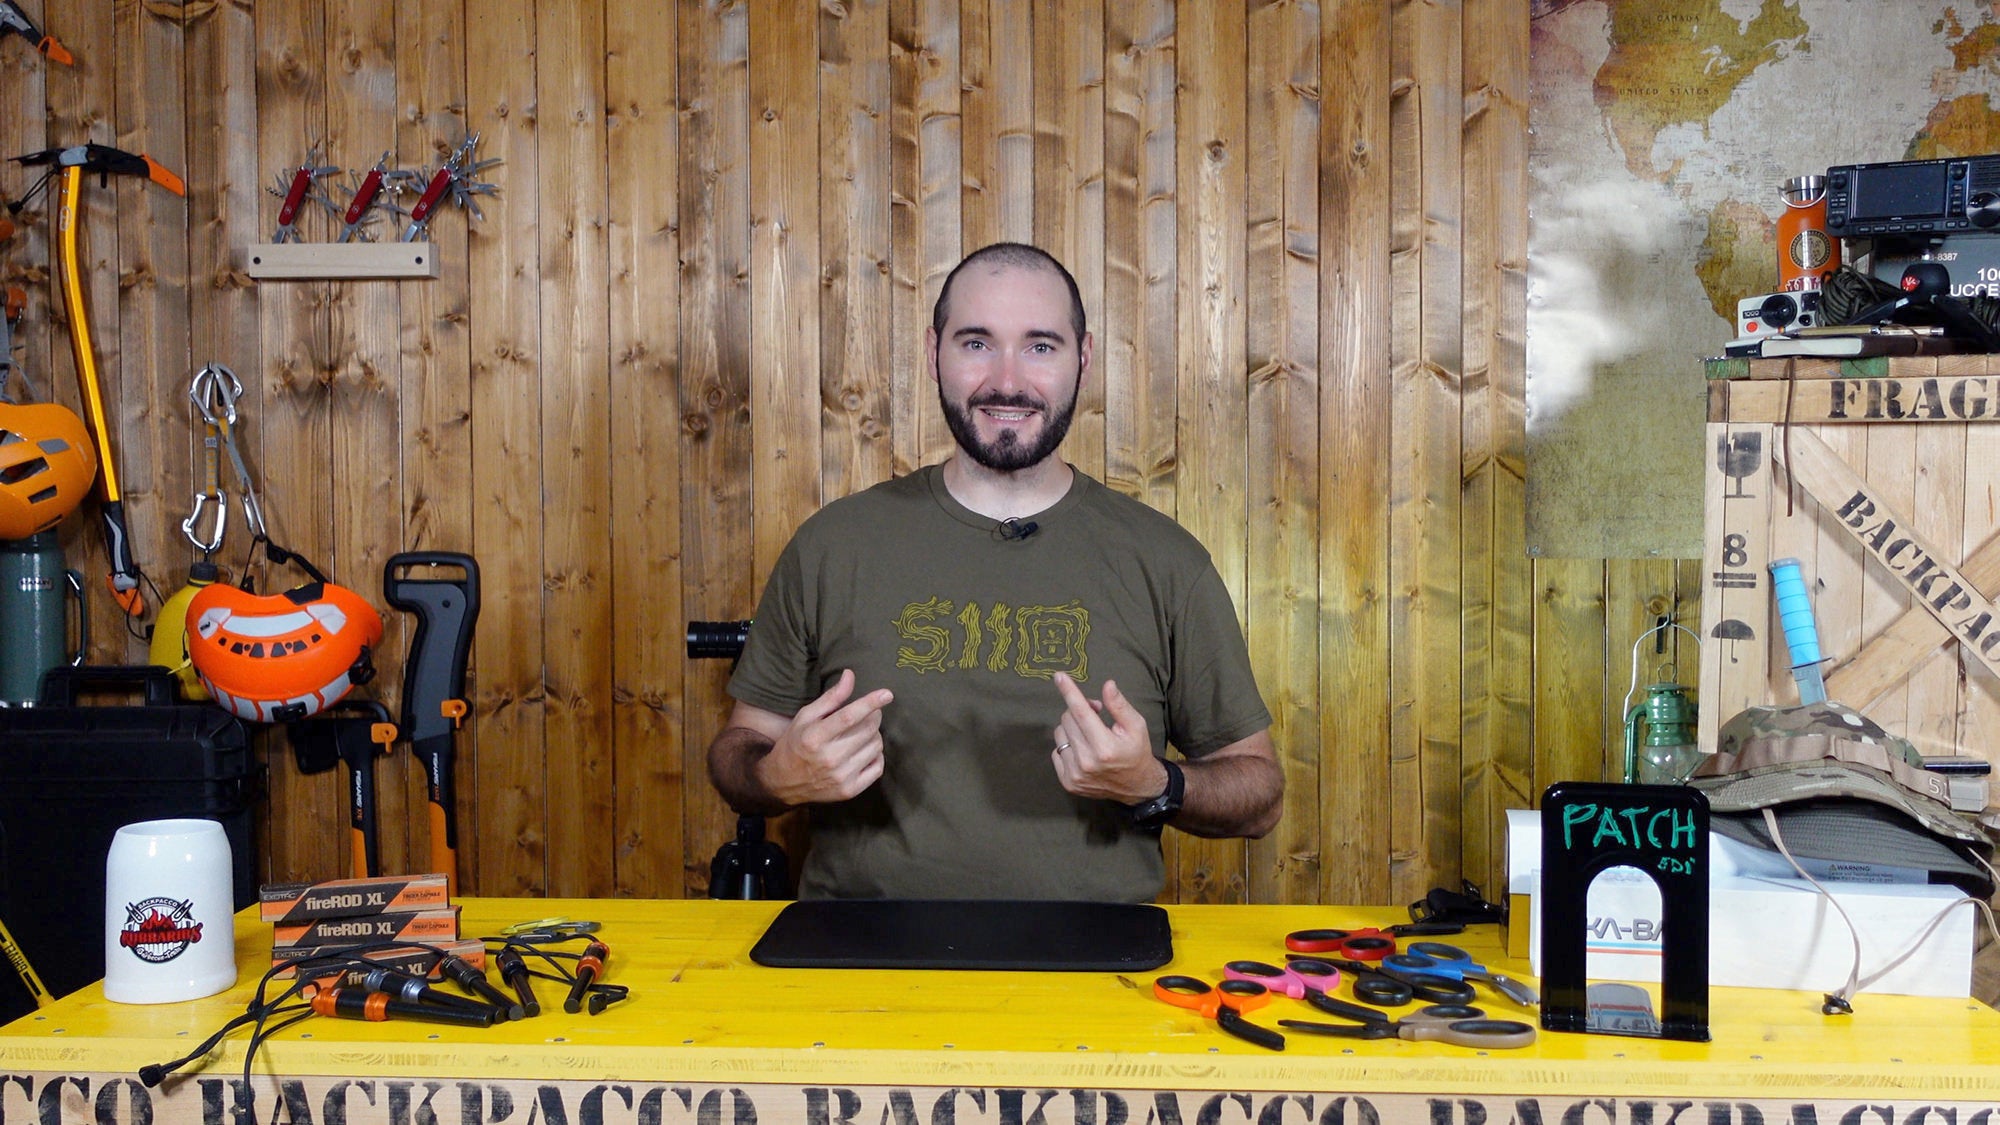 COPERTINA DEL VIDEO DOVE PAOLO DI BACKPACCO SPIEGA LA T-SHIRT STICKS AND STONES DI 5.11